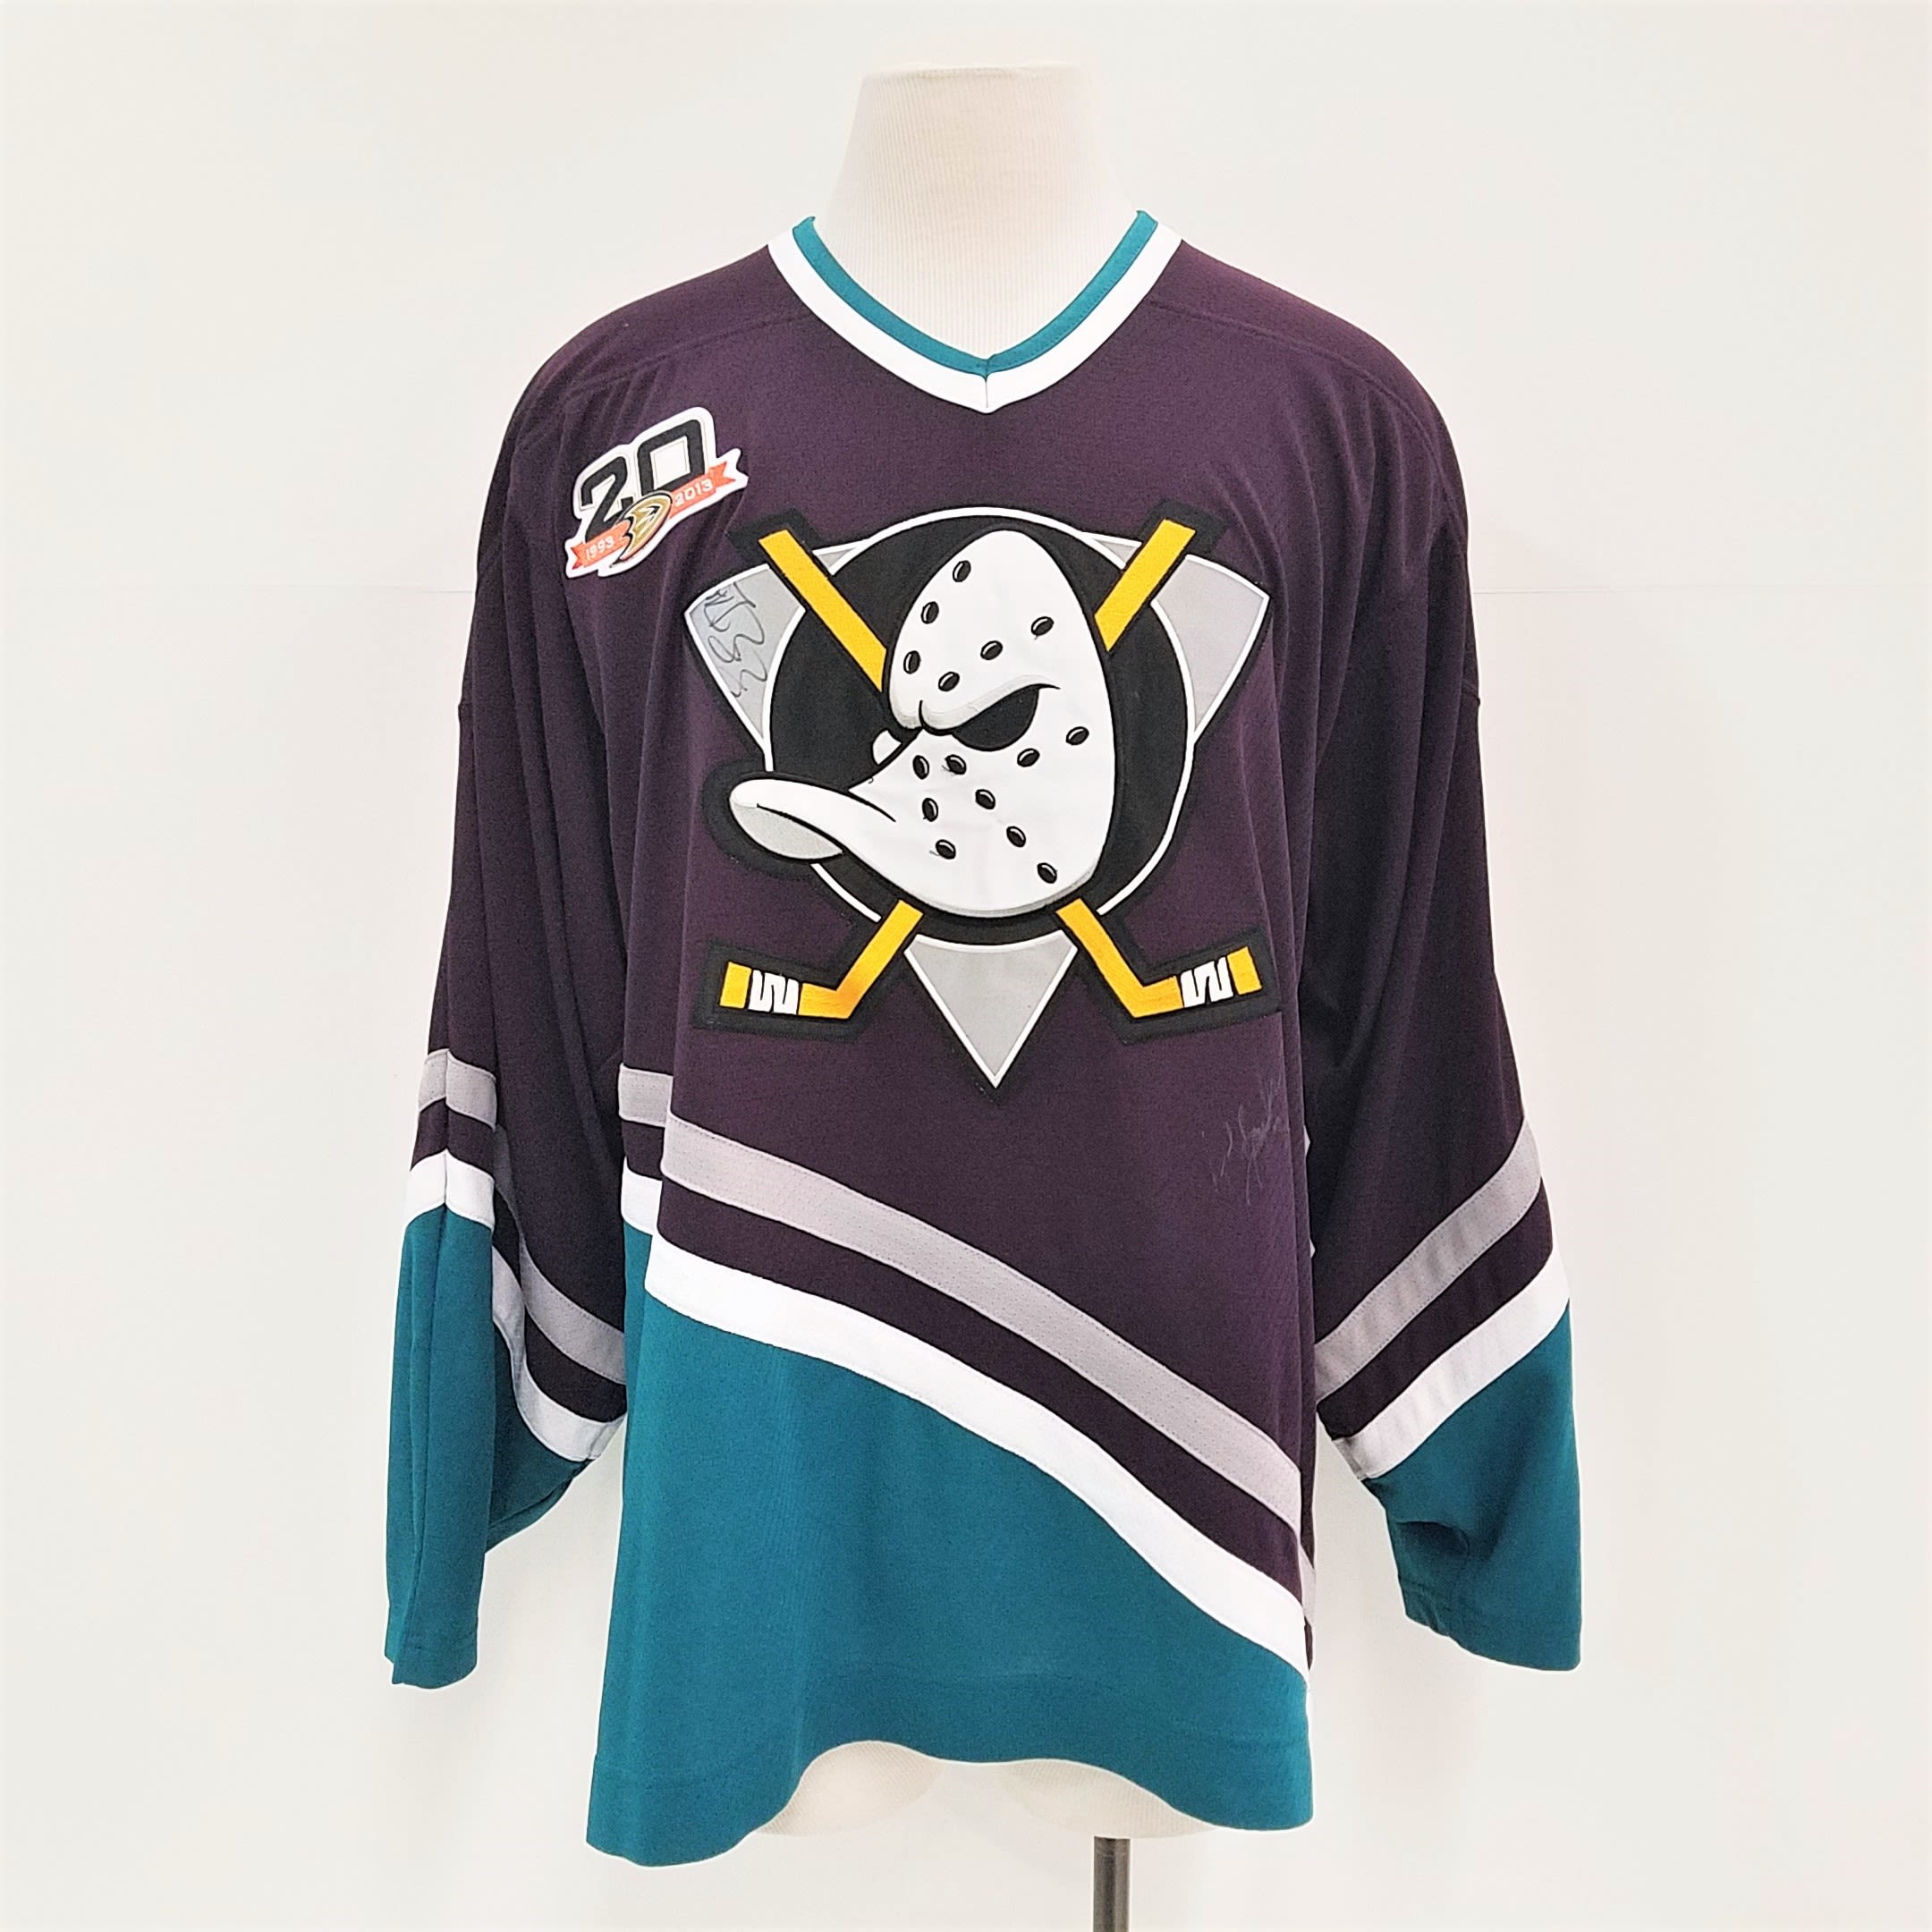 Mighty Ducks disney Anaheim Vintage ccm Hockey Jersey Sz s nhl